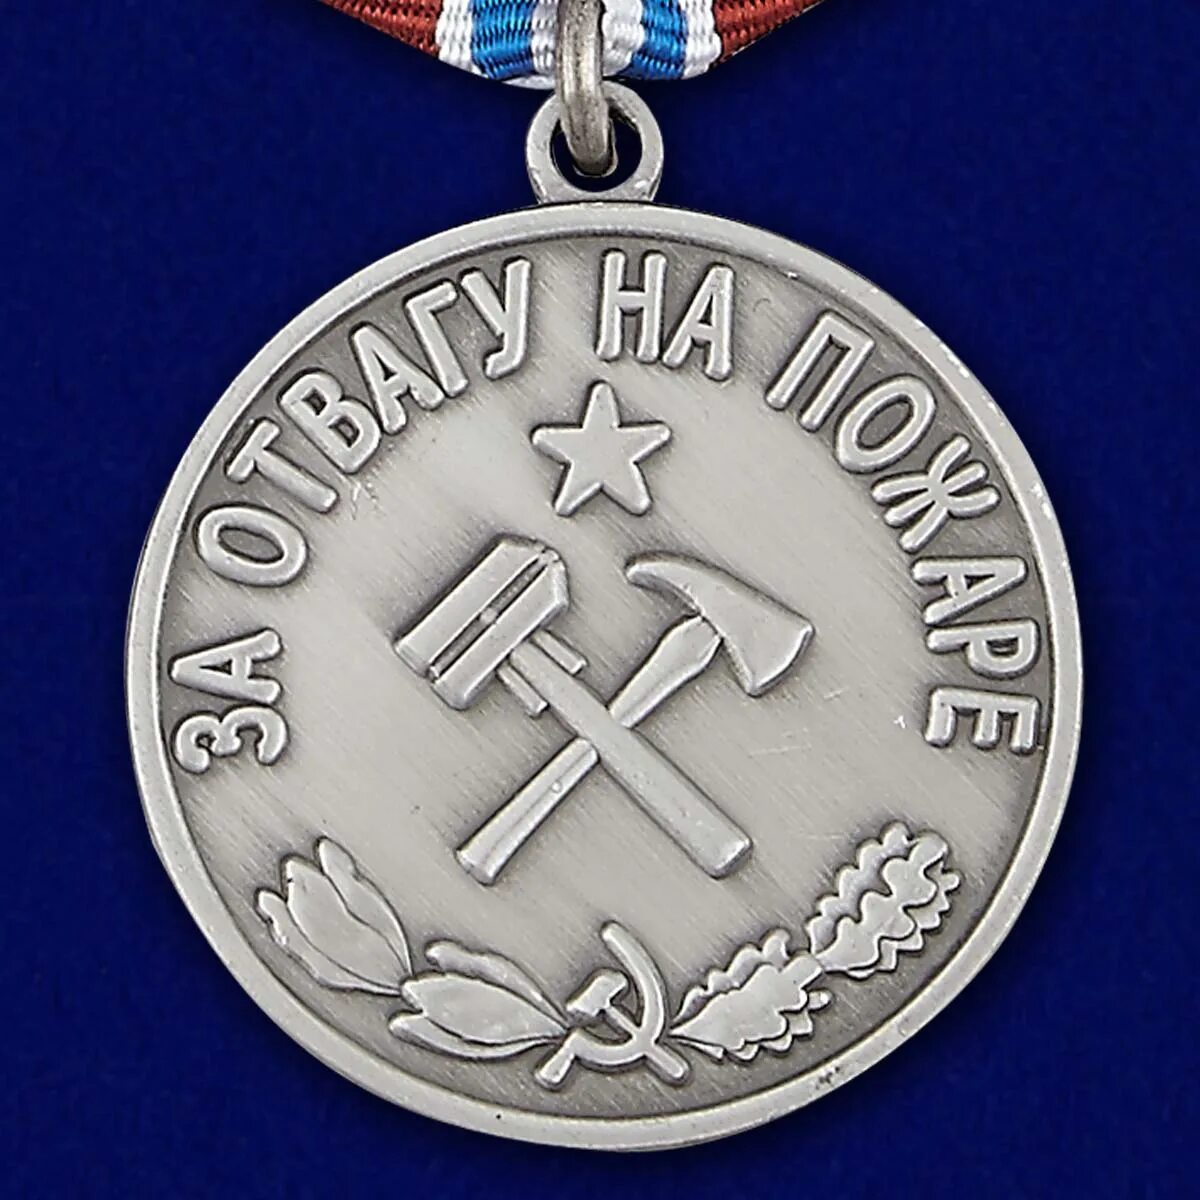 За отвагу на пожаре ссср. Медаль «за отвагу на пожаре» 1972 года-. Медаль за спасение на пожаре СССР. Медаль пожарника СССР.